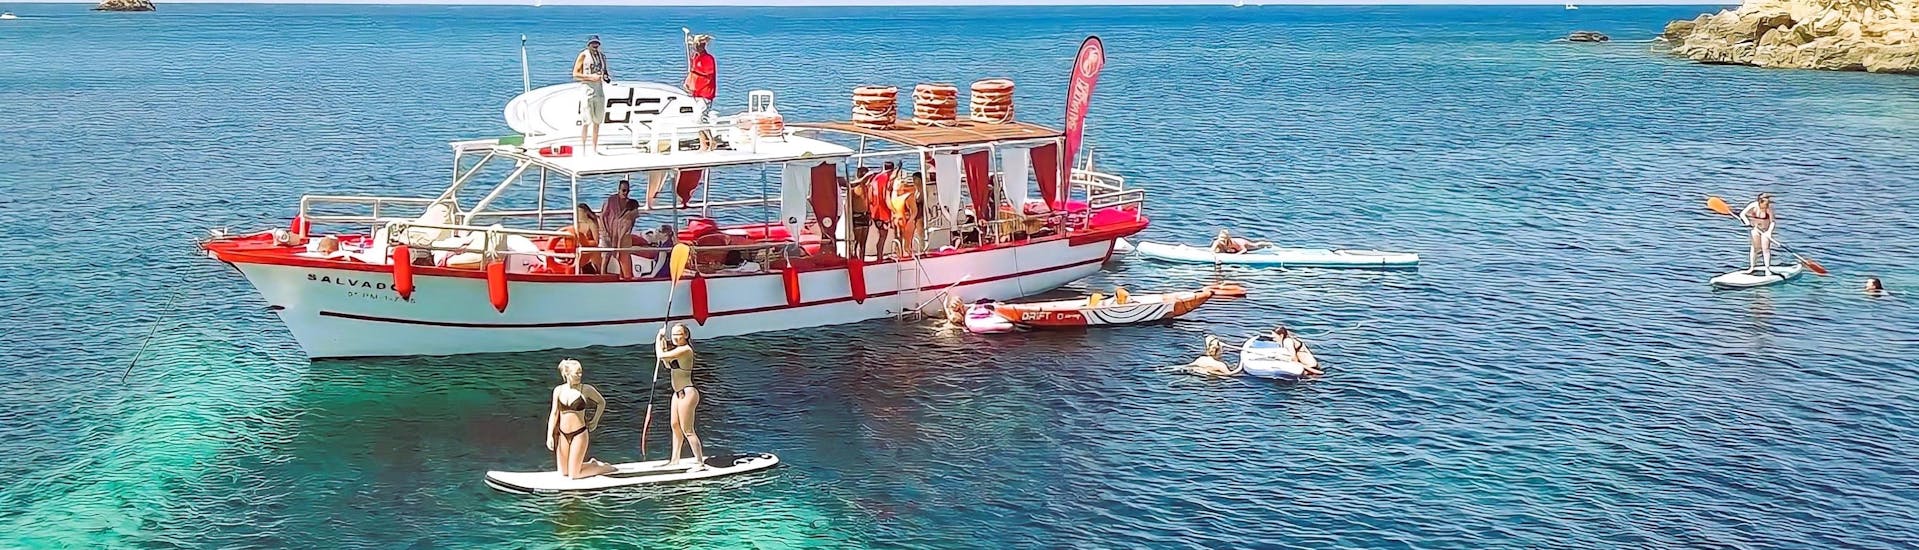 Gente disfrutando en un barco todo incluido por la costa de Ibiza. con Salvador Ibiza